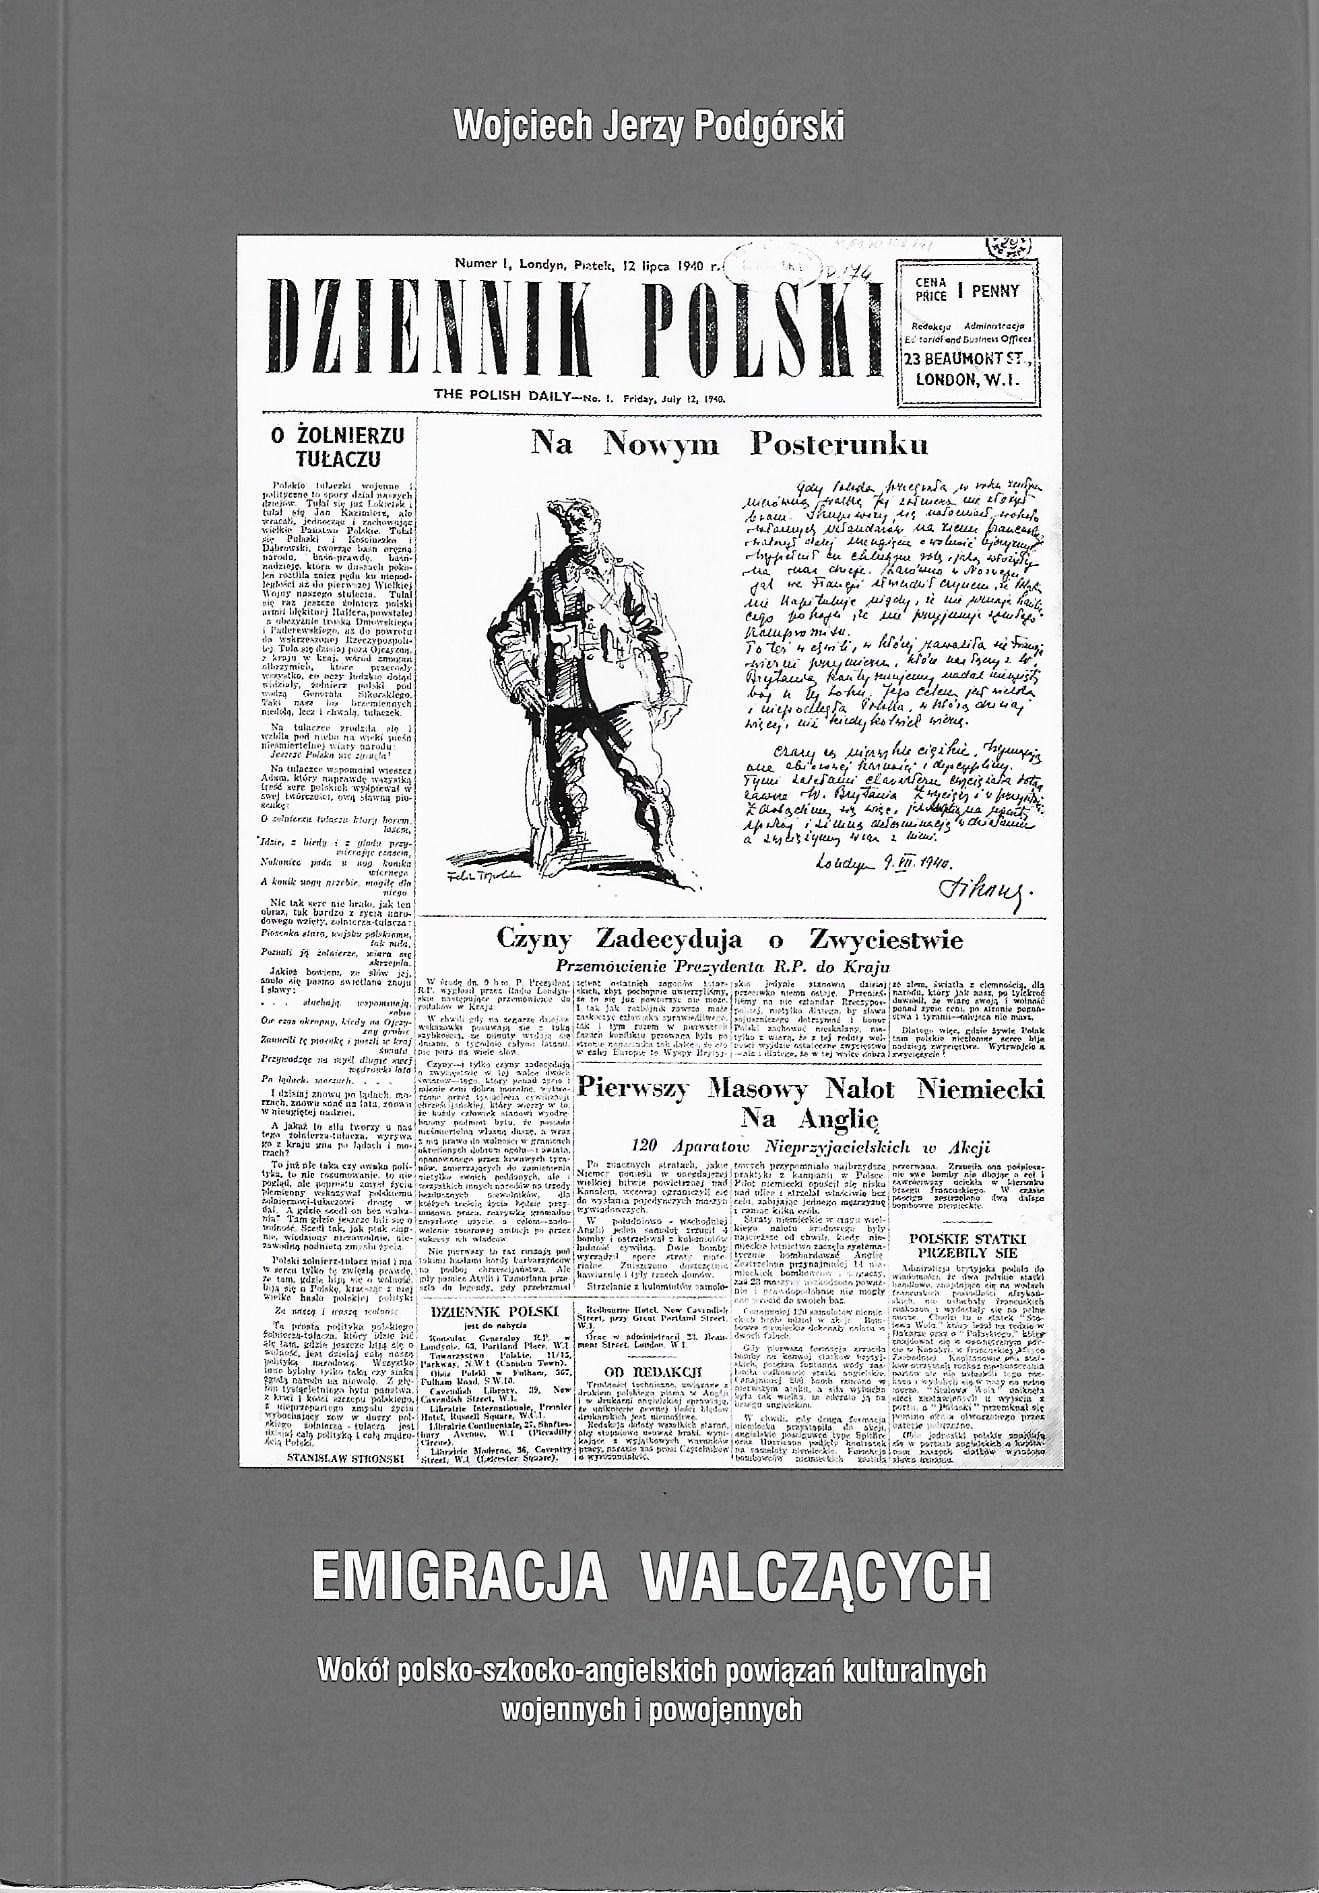 Emigracja walczących wokół polsko-szkocko-angielskich powiązań kulturalnych (W.J.Podgórski)